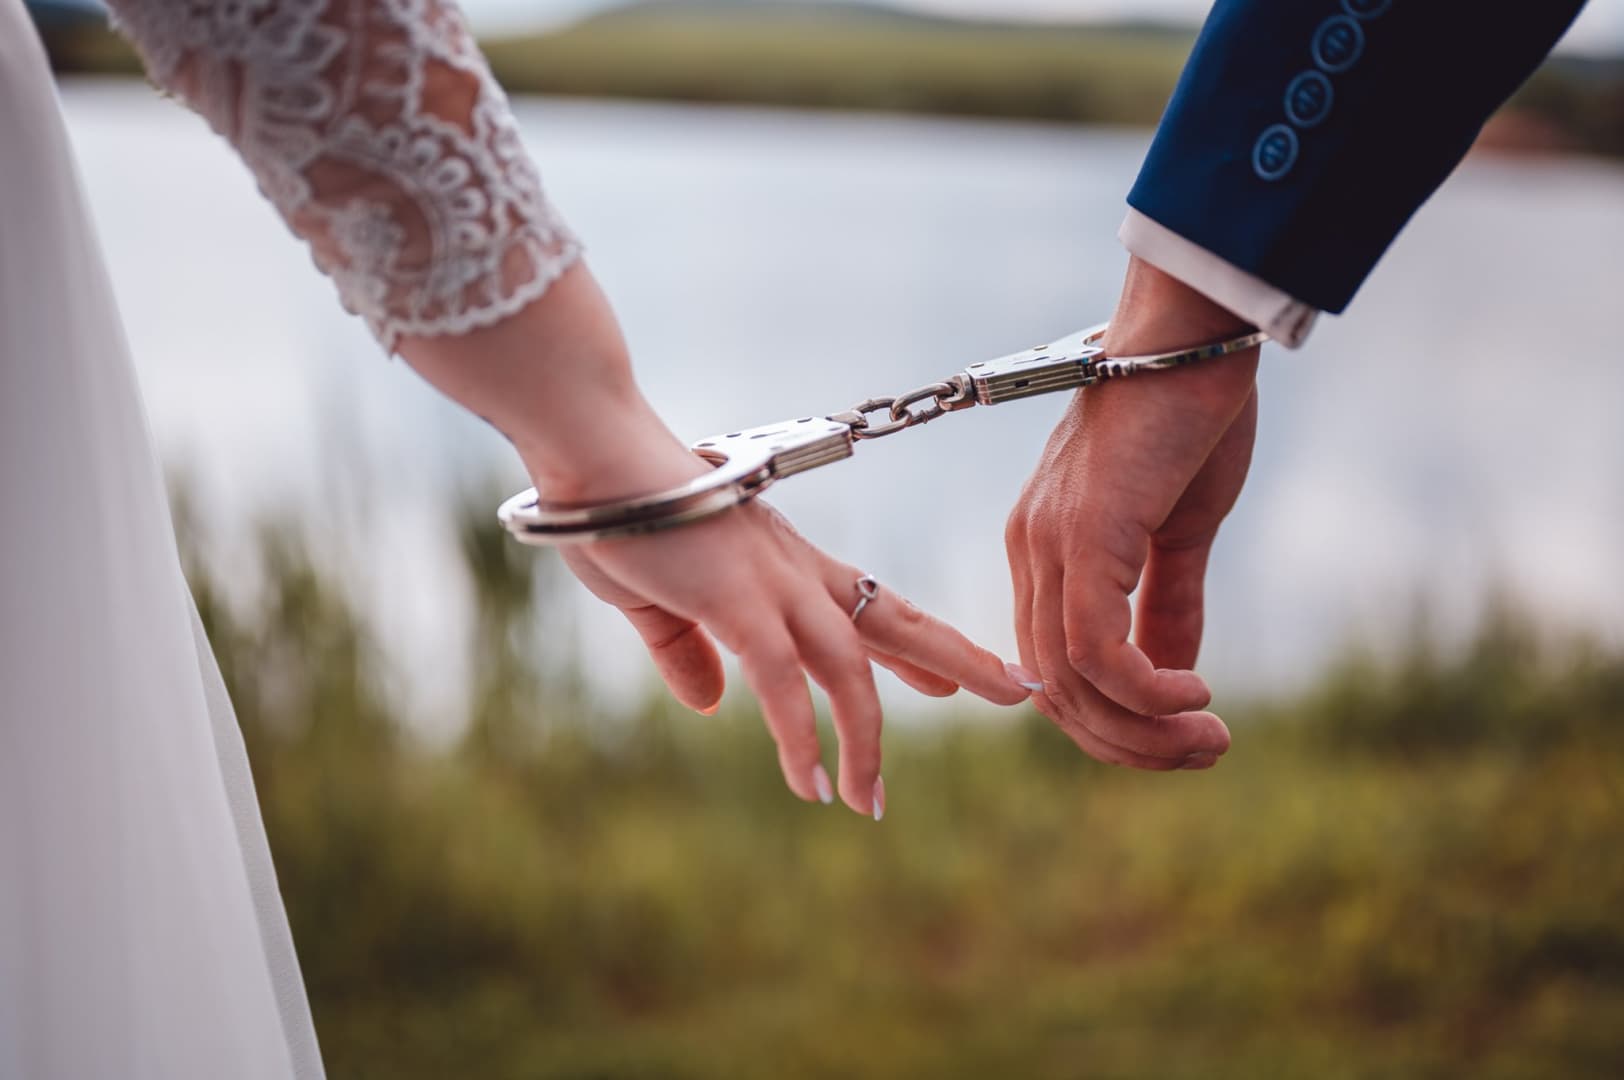 Rendőresküvő: a szerelmesek még a nagy napon sem tudtak elszakadni hivatásuktól